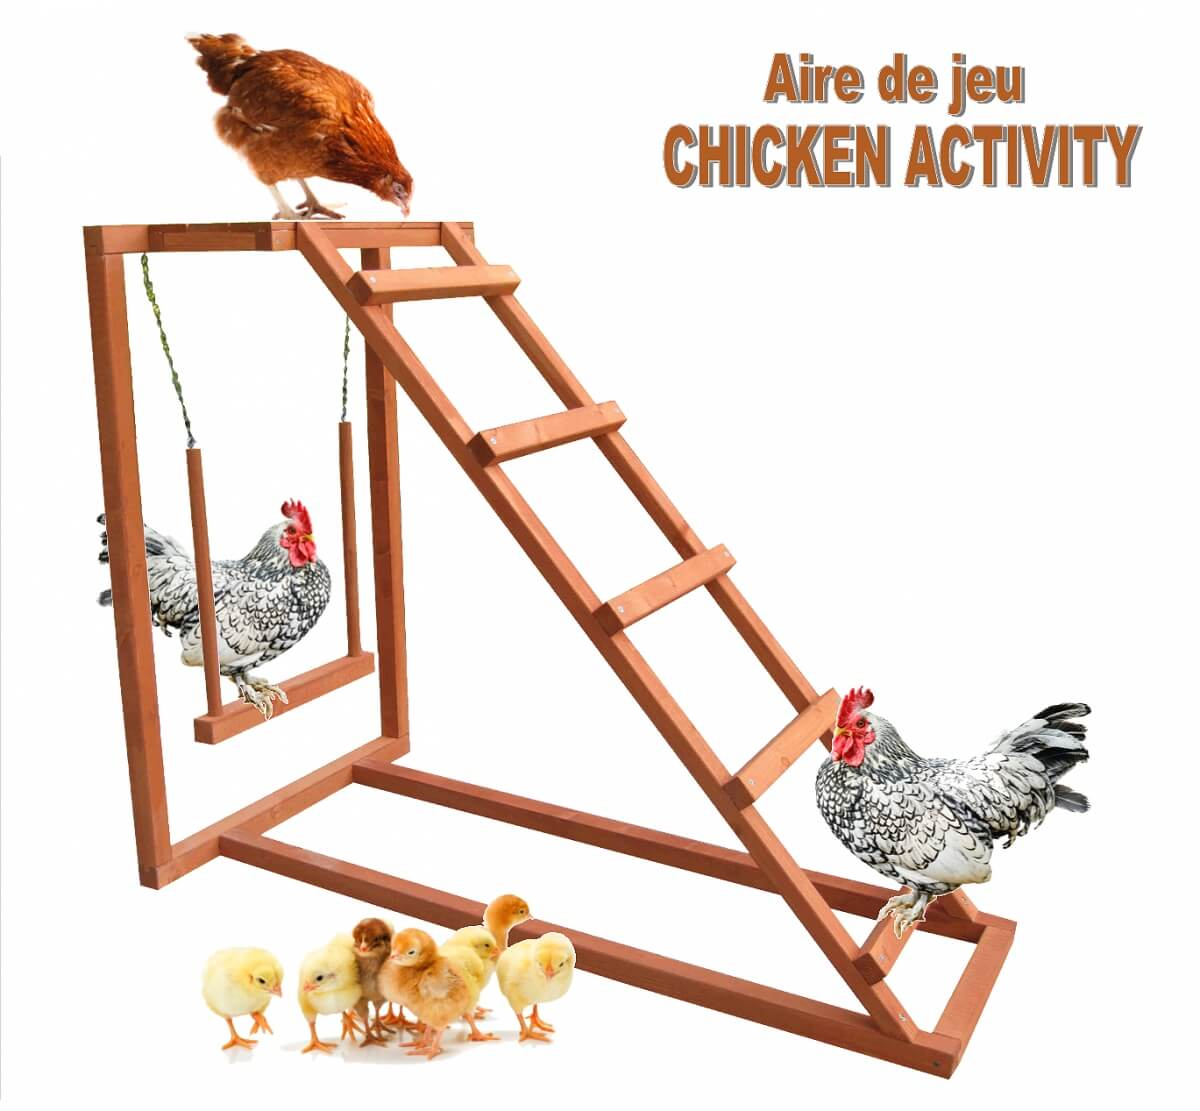 Spielplatz für Hühner Chicken Activity